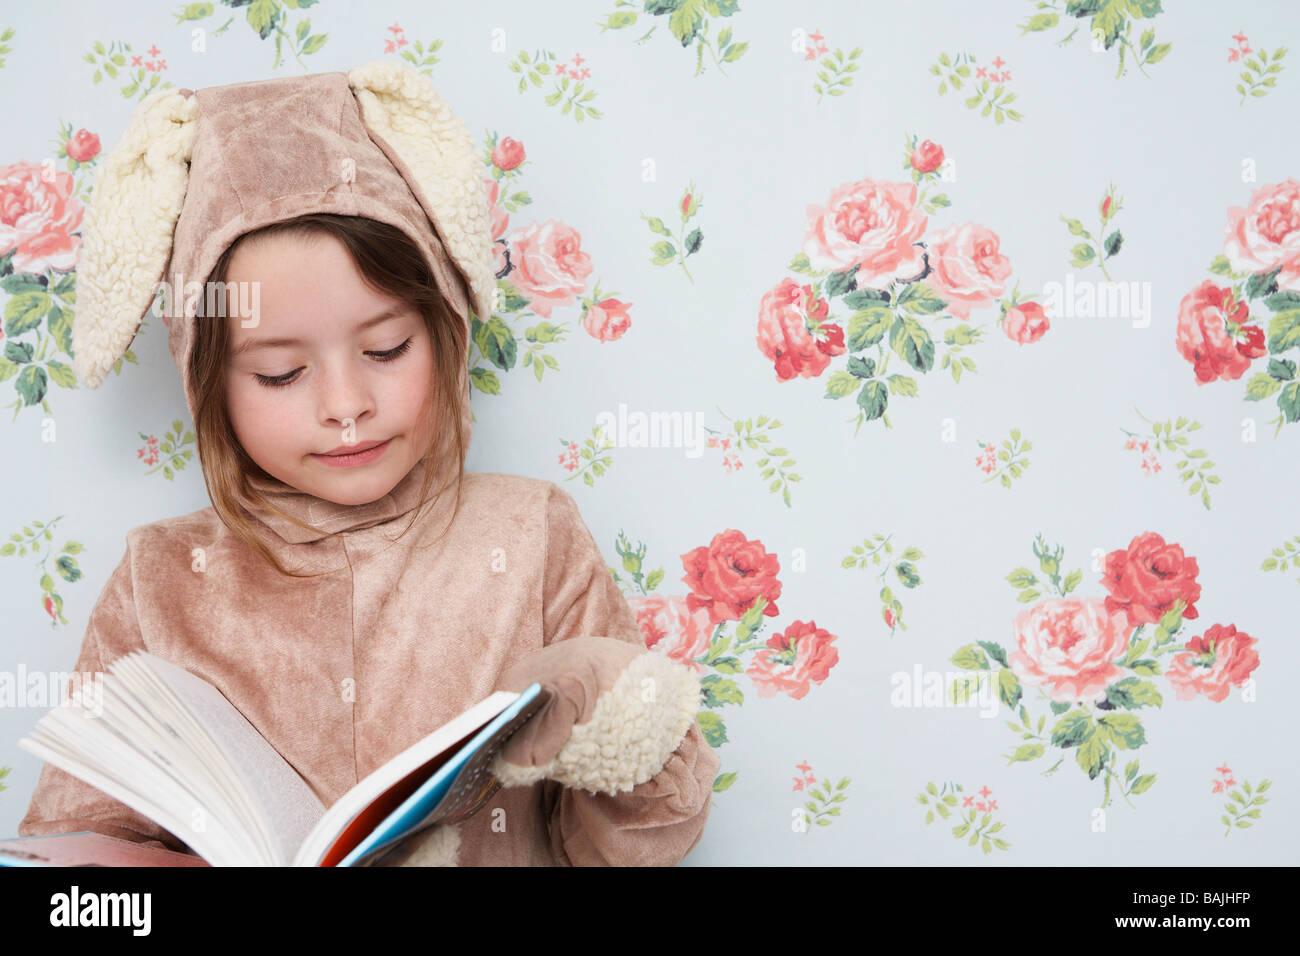 Jeune fille (5-6) n costume de lapin reading book, papier peint Motif floral avec en arrière-plan Banque D'Images